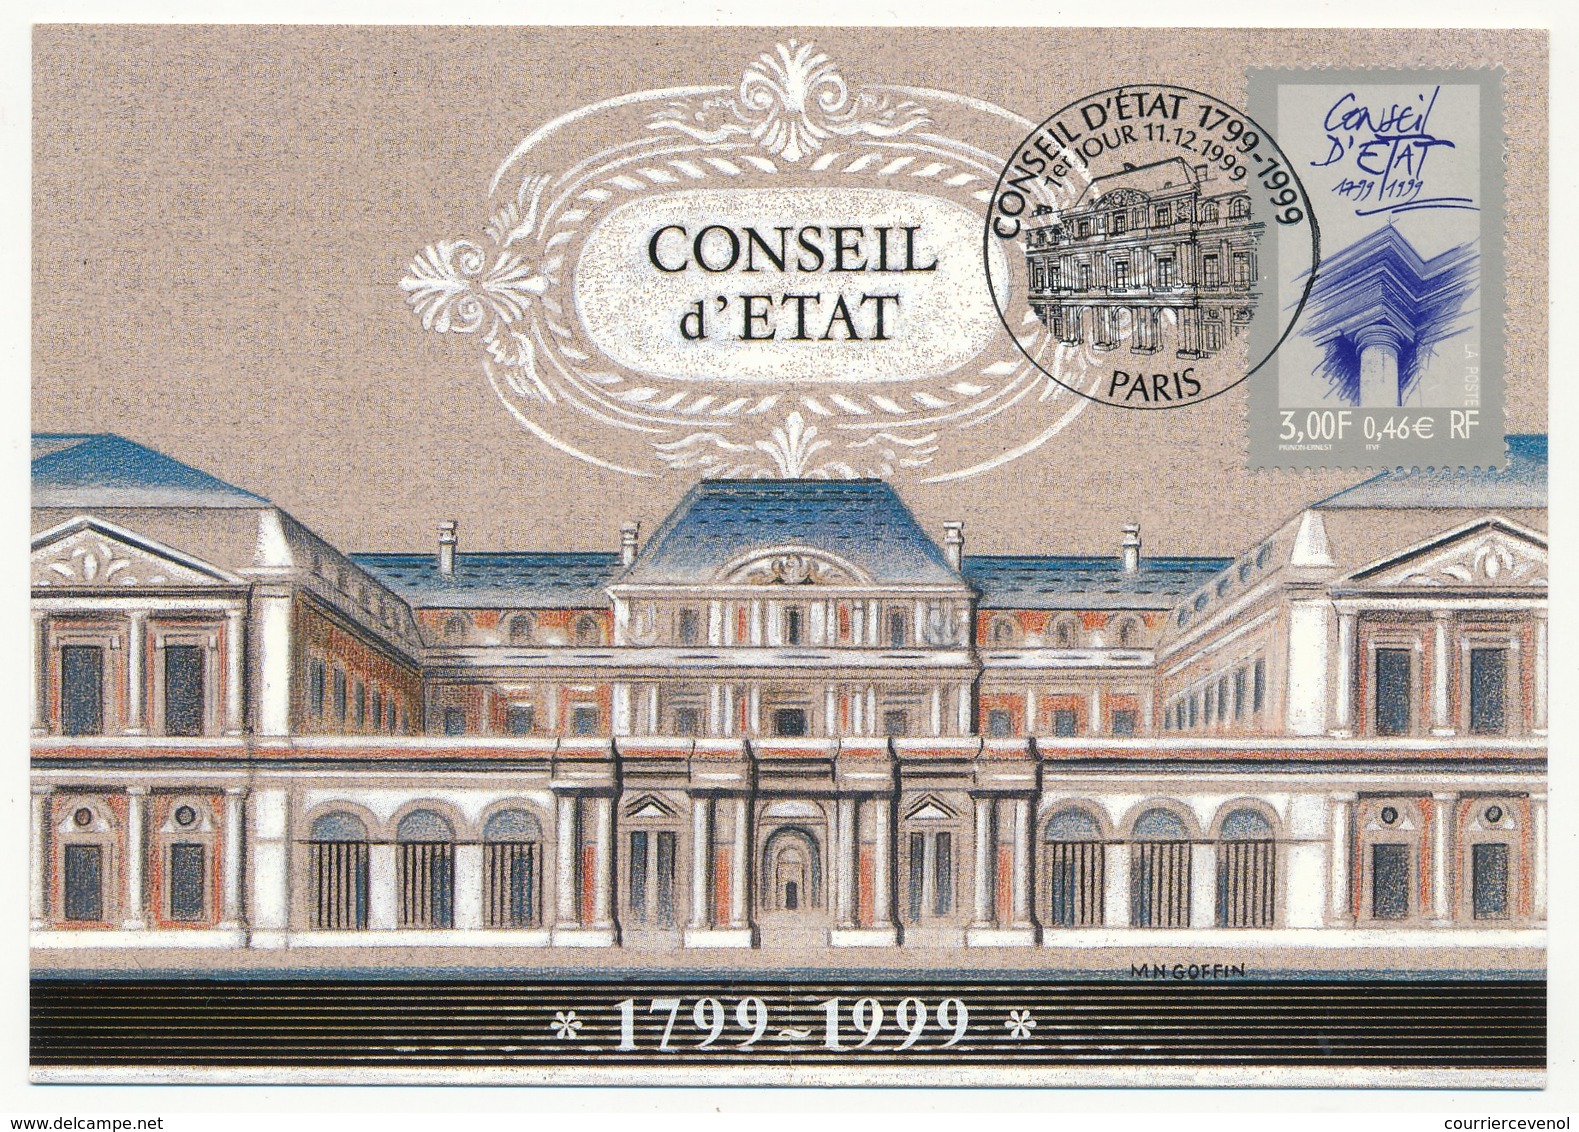 FRANCE - Carte Maximum - 3,00F Conseil D'Etat - Paris - Premier Jour 11/12/1999 - 1990-1999